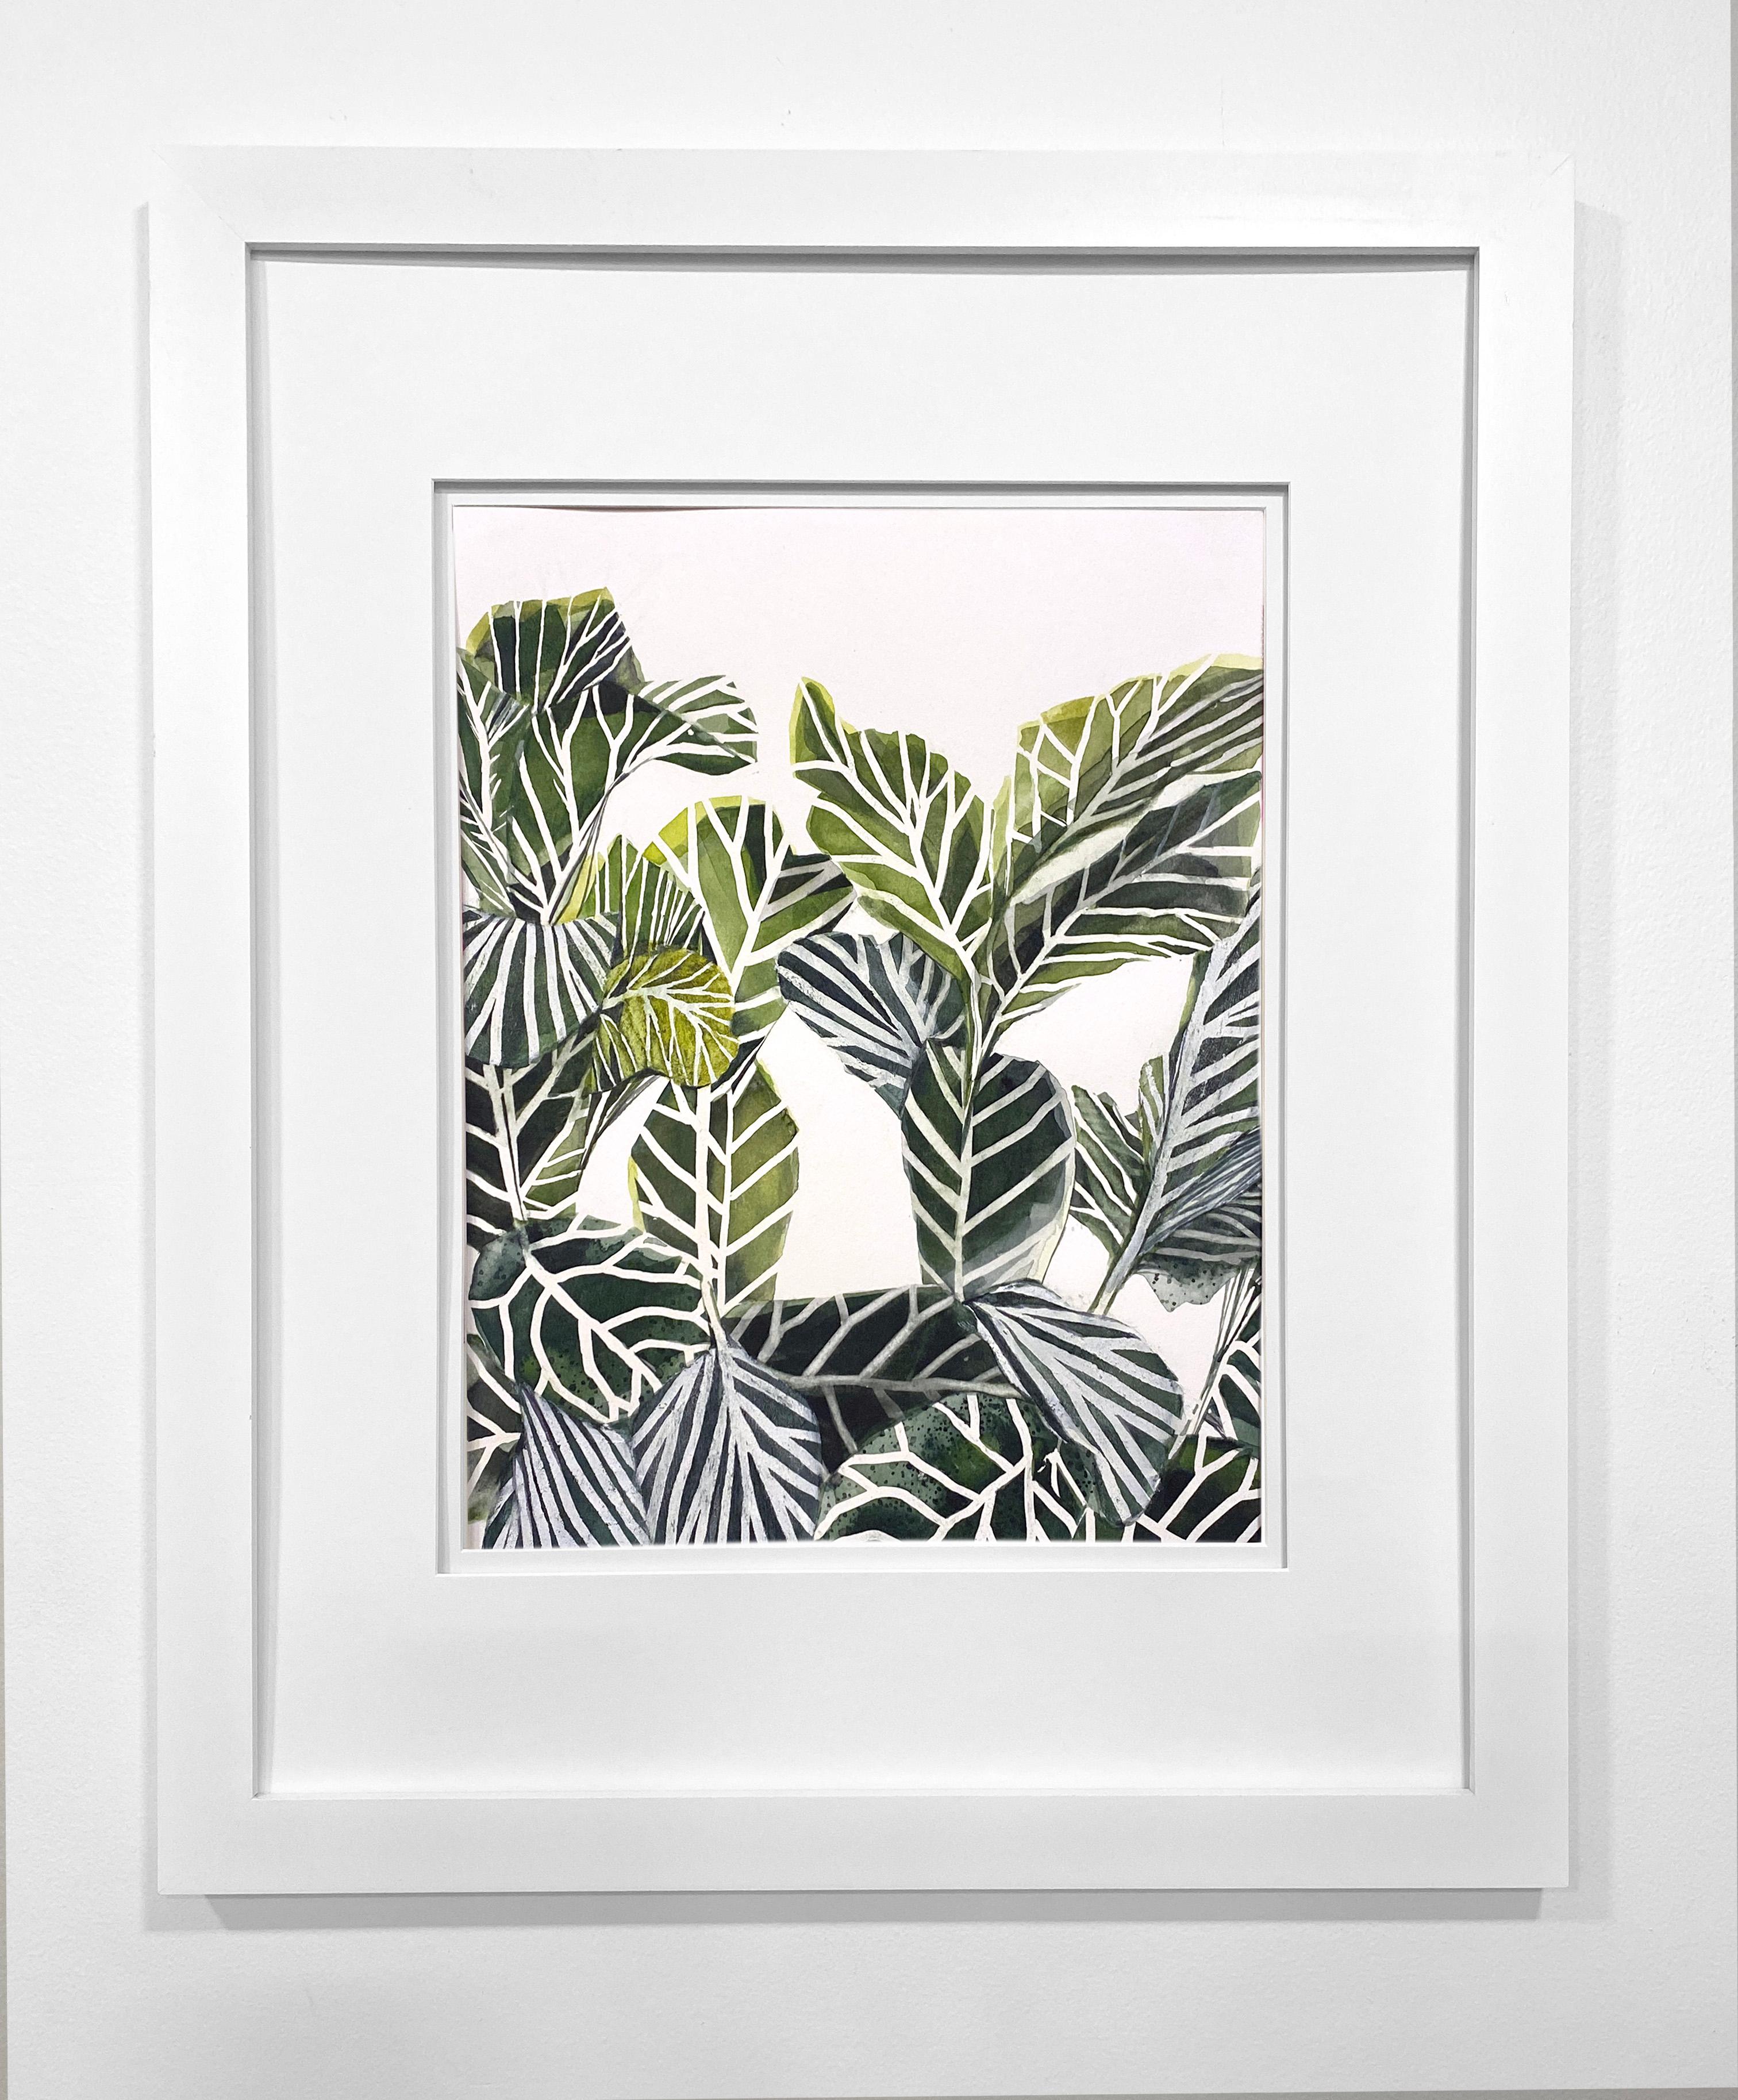 Framed Botanical Watercolor by Rachel Kohn - Plant Life 4